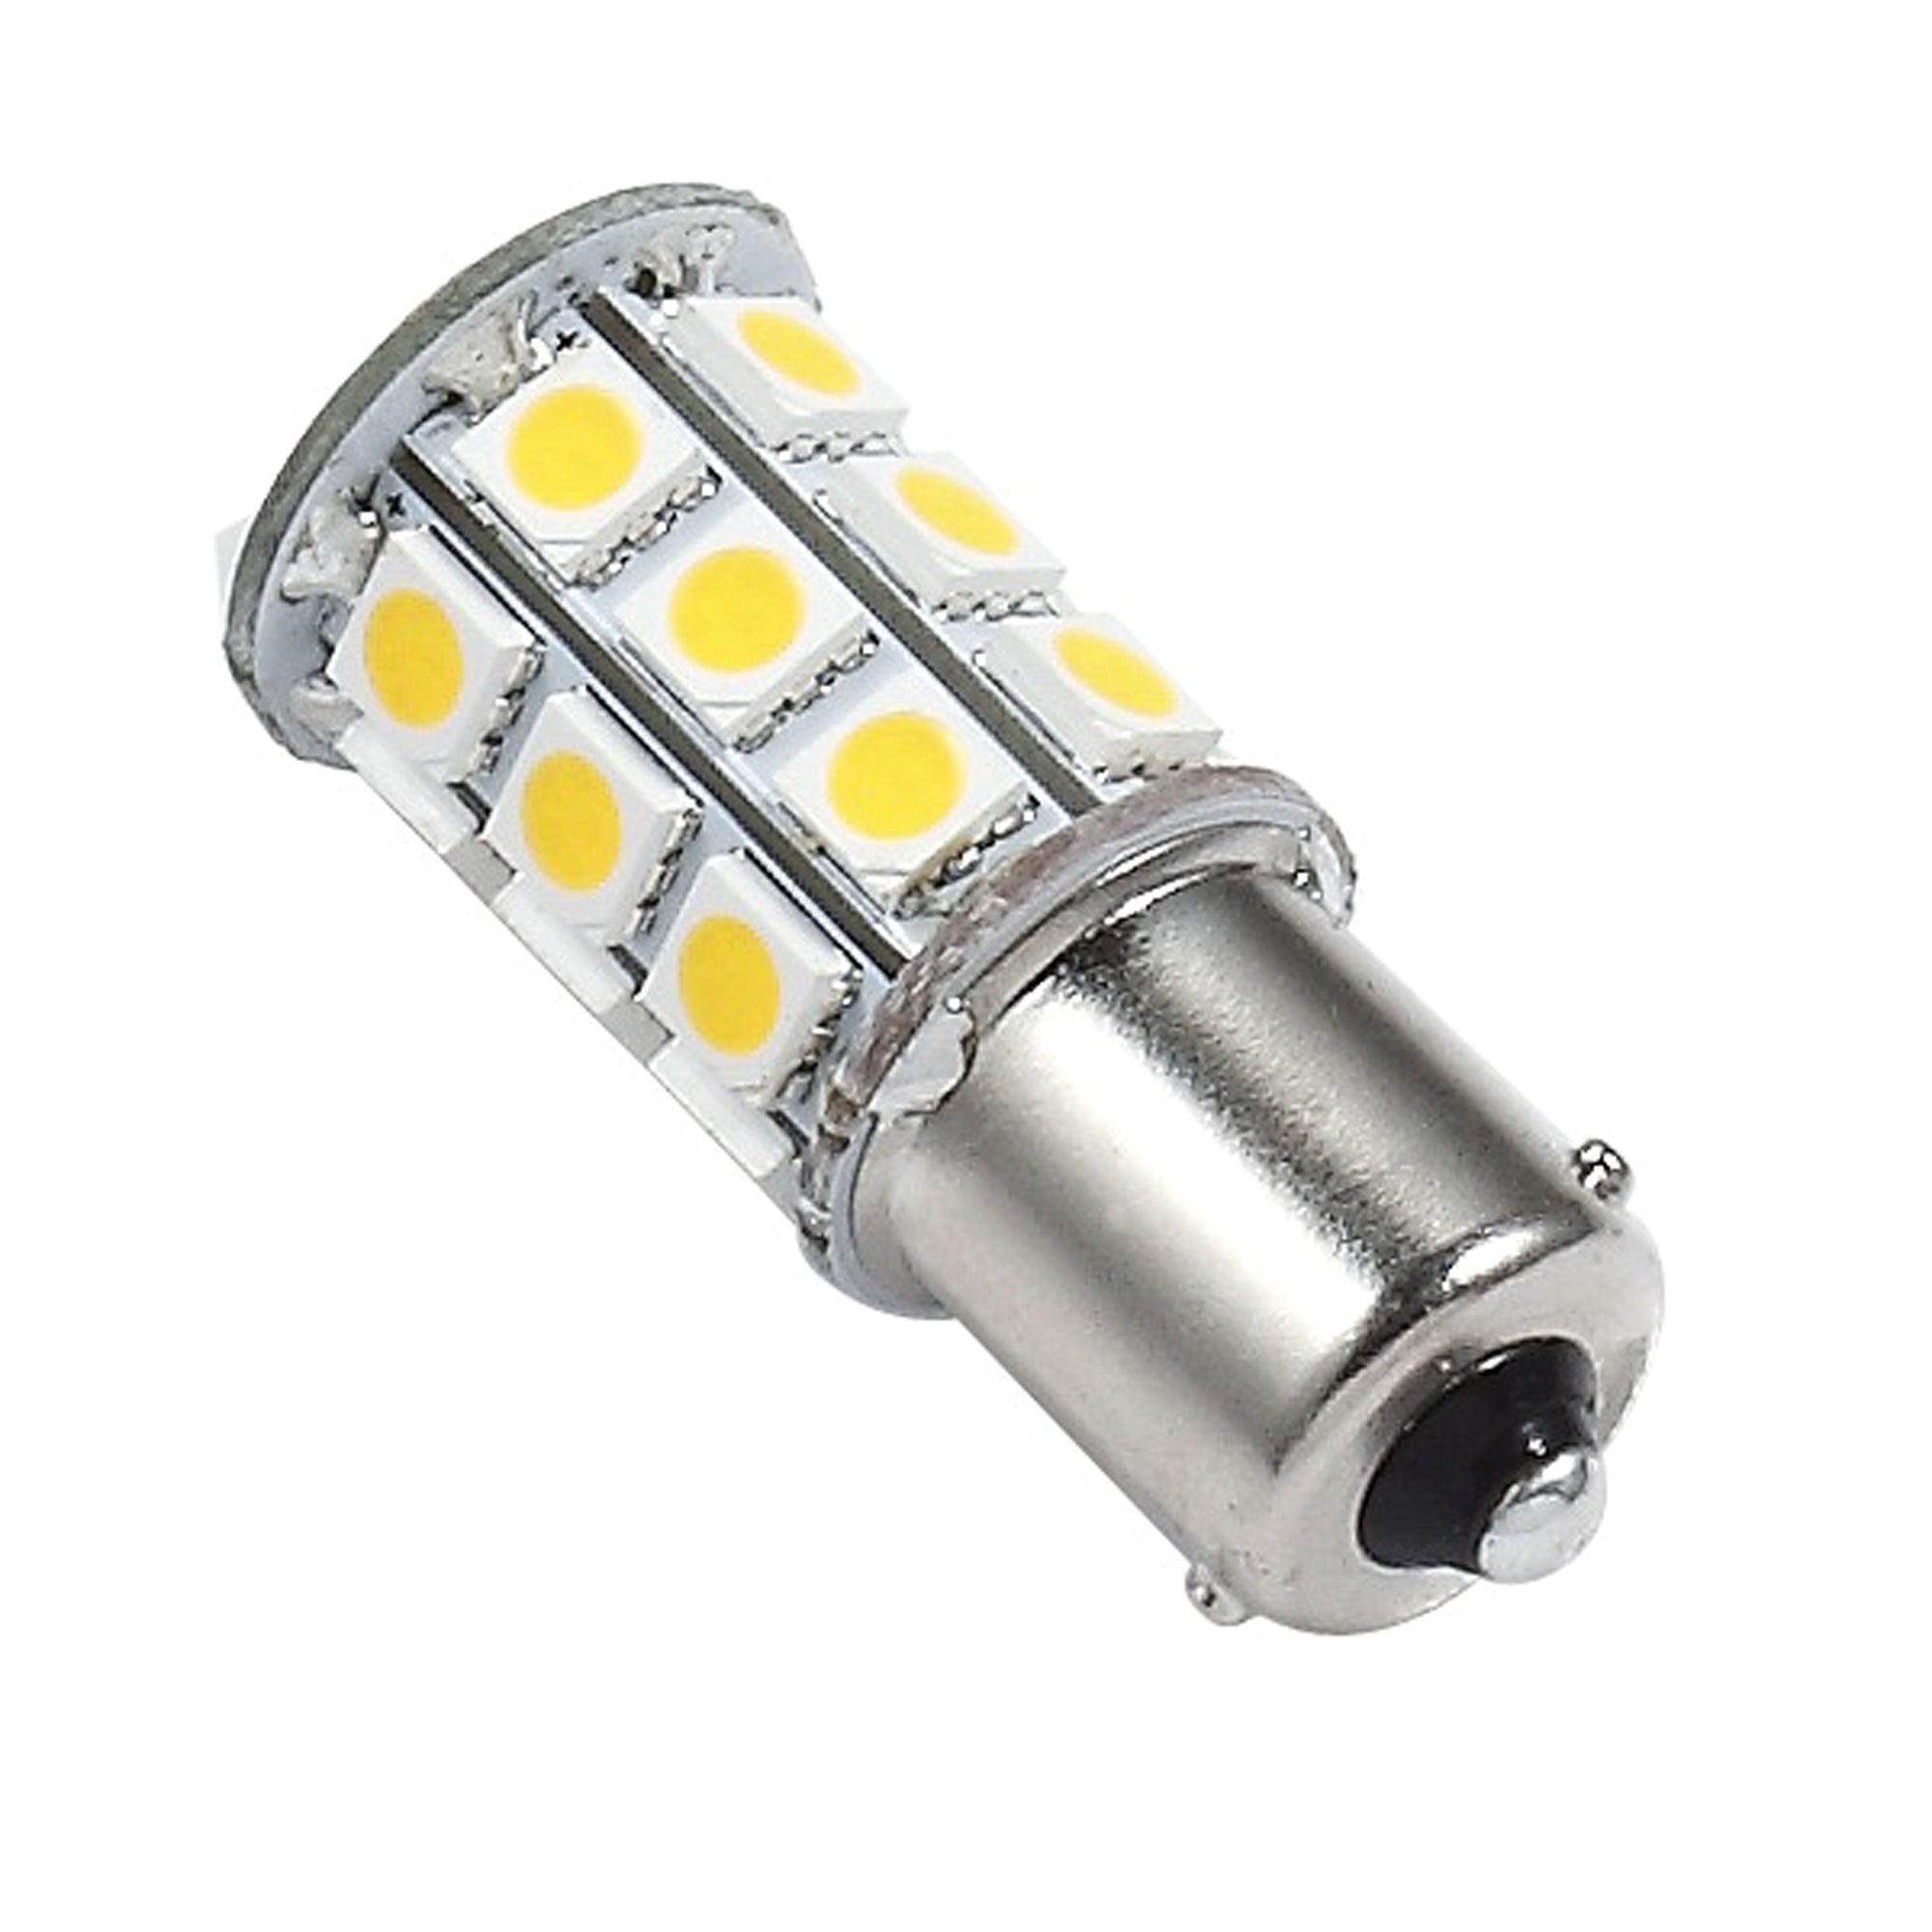 Ming's Mark 25010V LED Bulb 1156/1141 Base - Natural White, Pack of 6